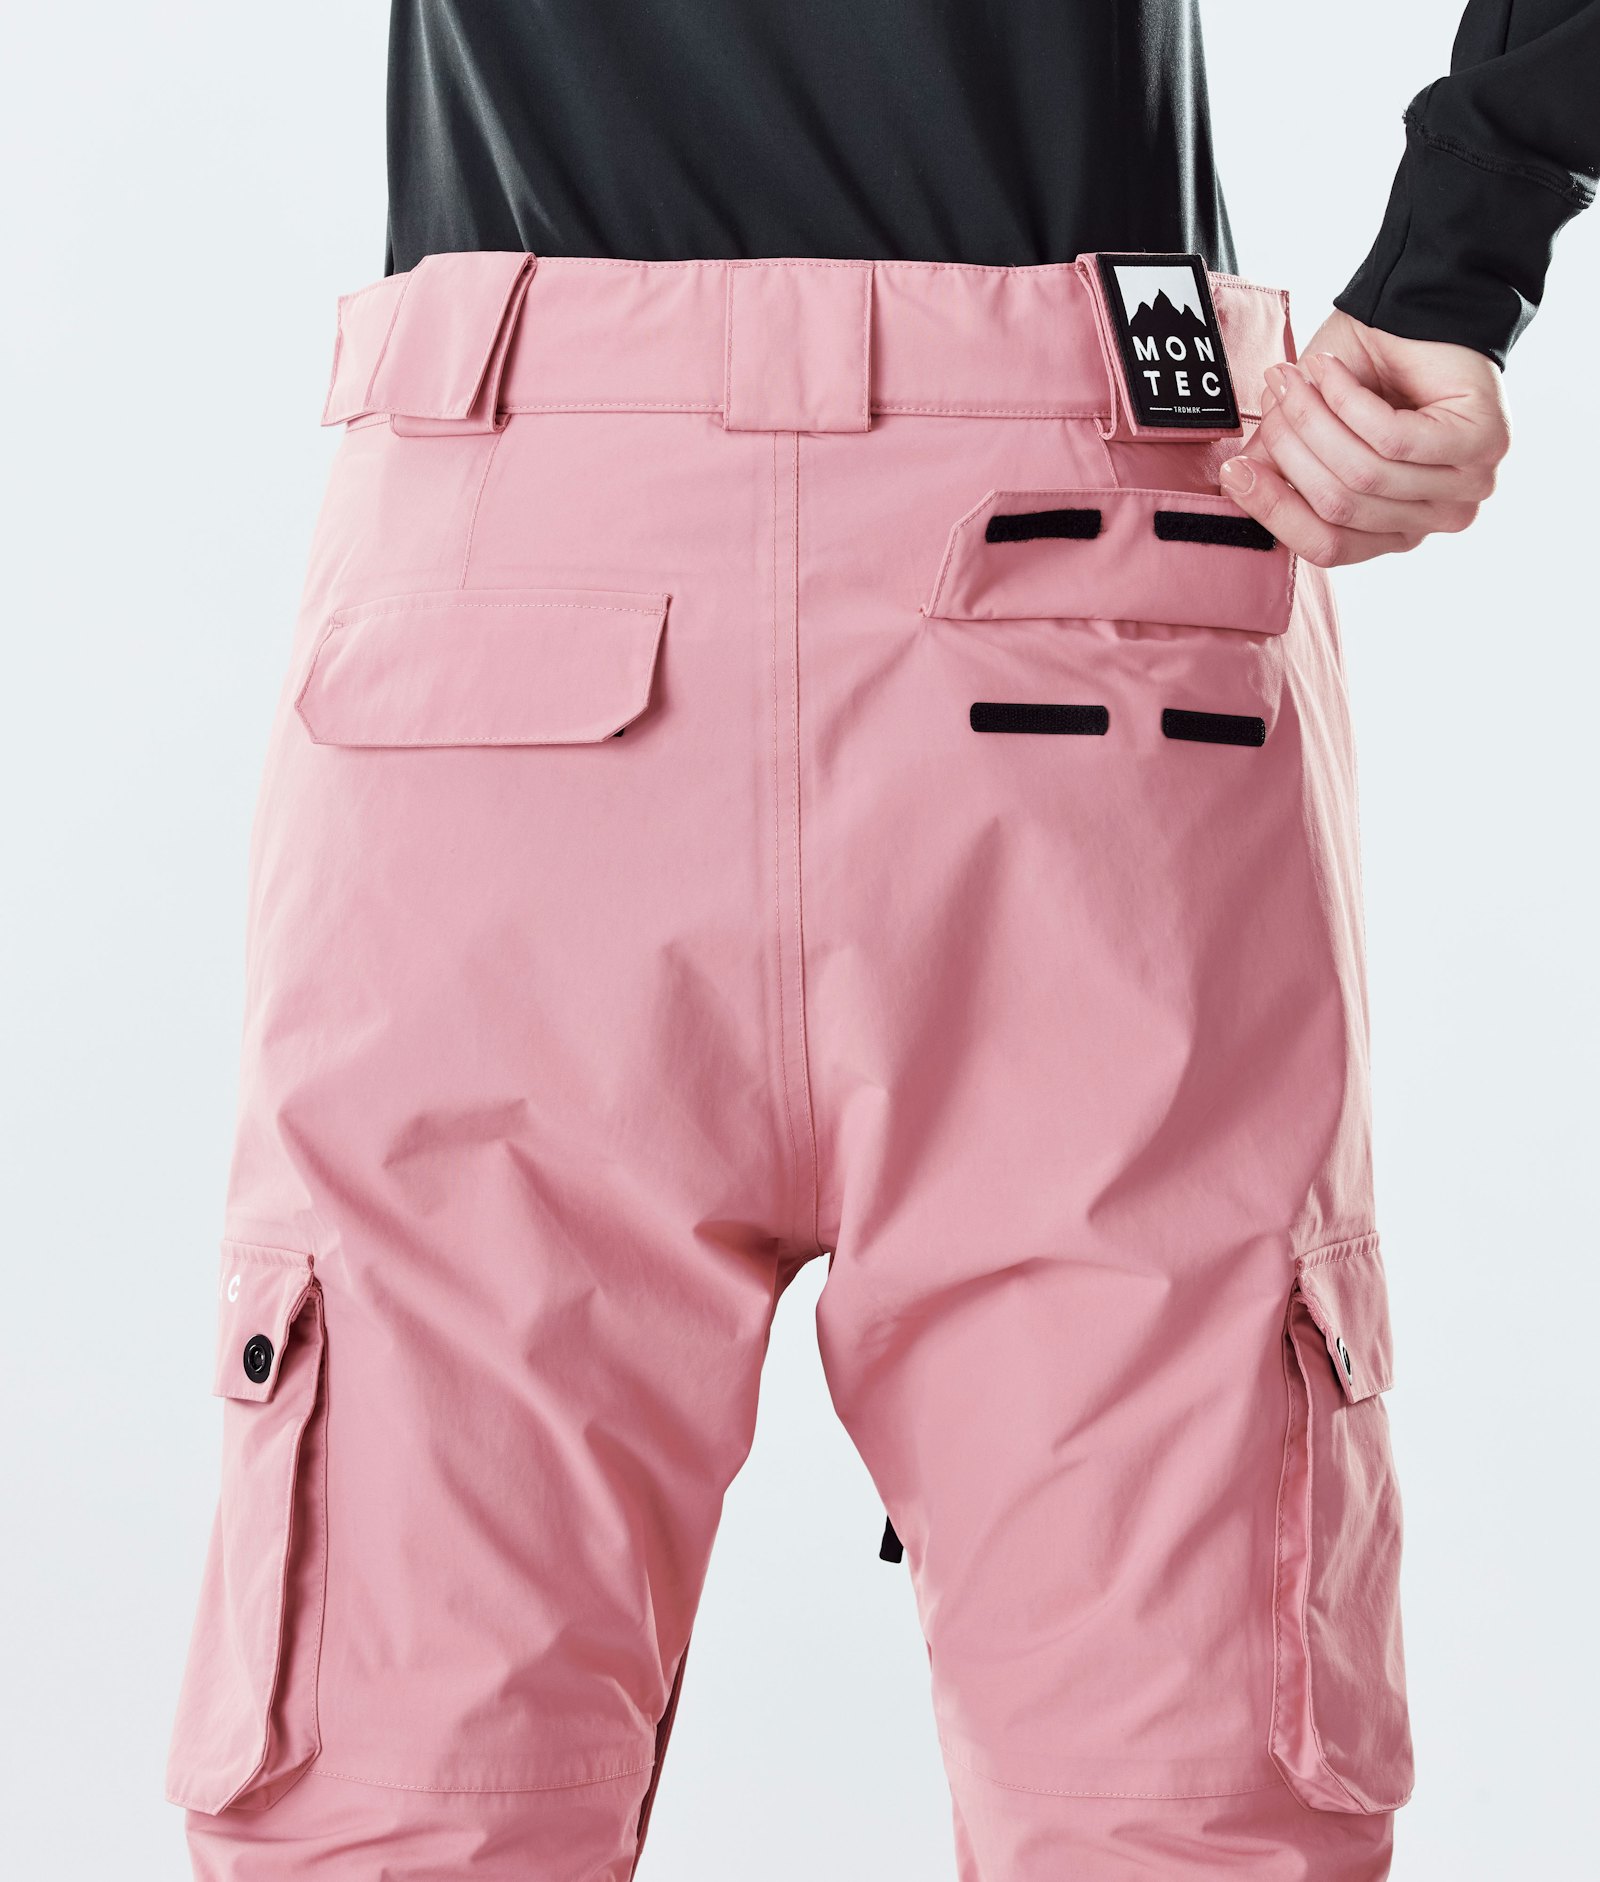 Montec Doom W 2020 Snowboard Pants Women Pink